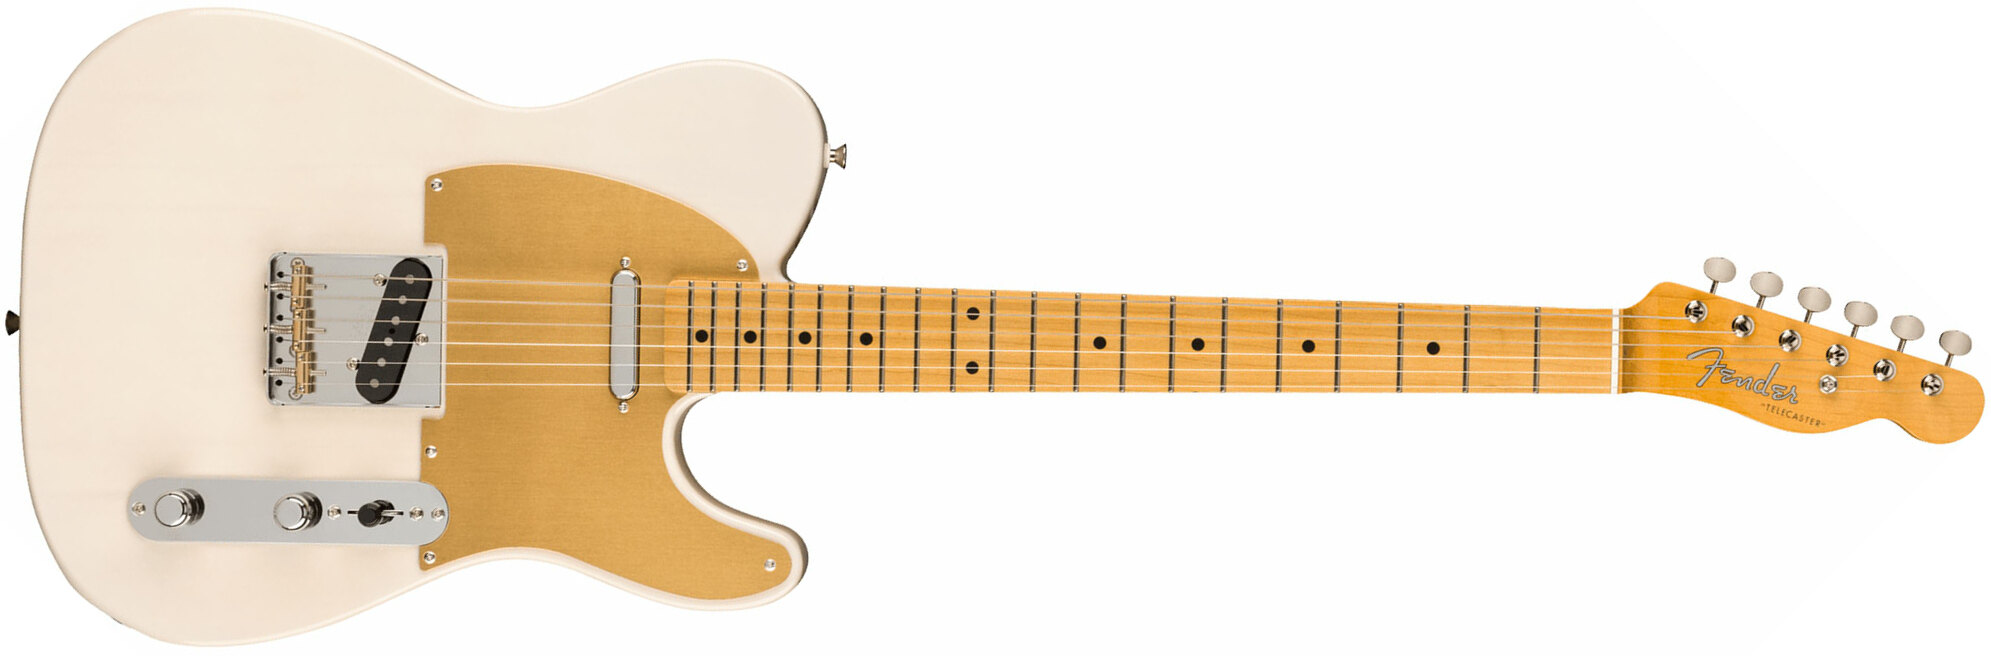 Fender Tele '50s Jv Modified Jap 2s Ht Mn - White Blonde - Guitarra eléctrica con forma de tel - Main picture